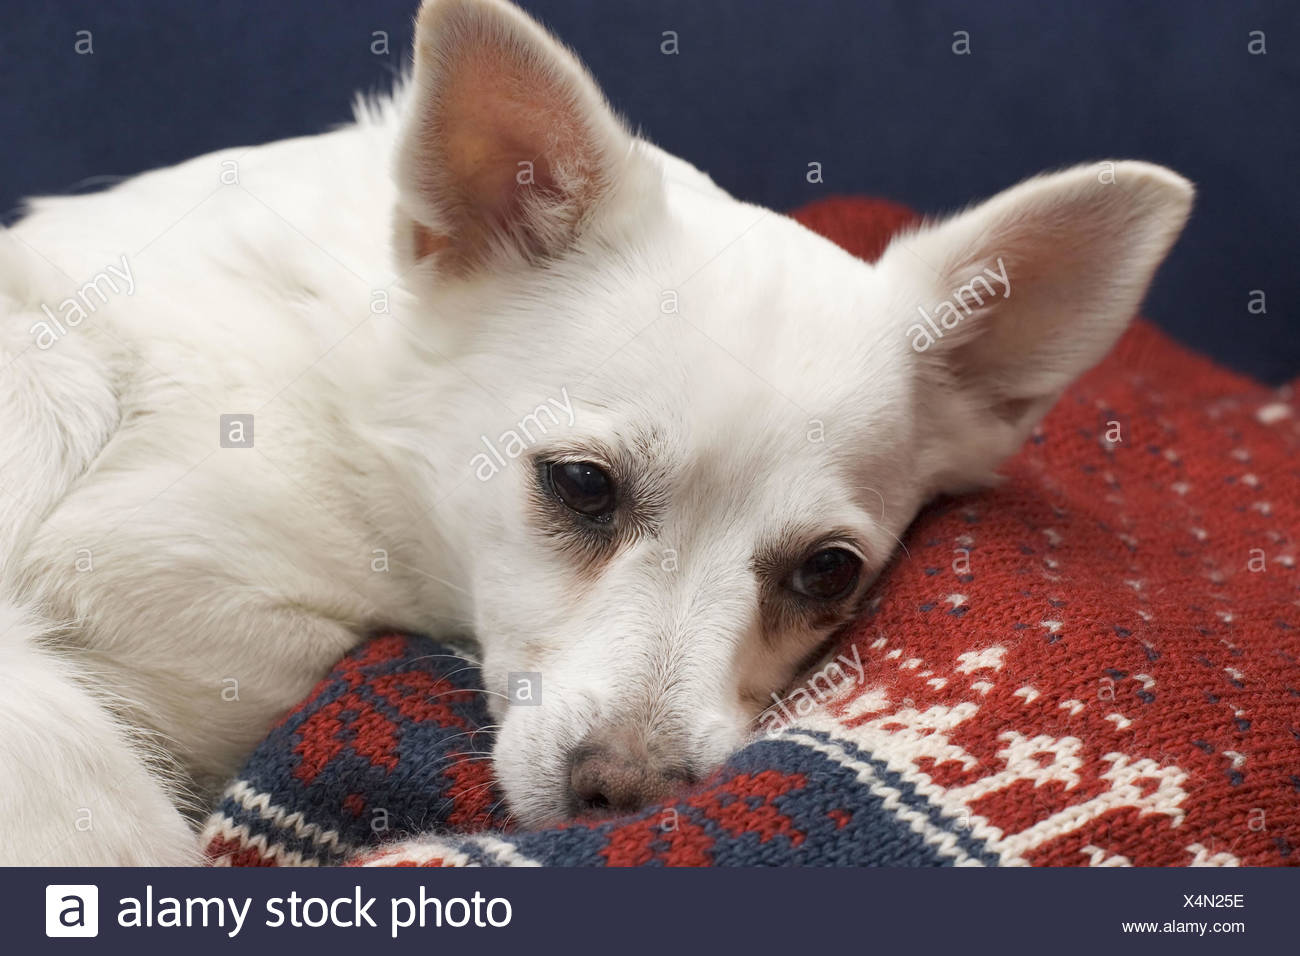 pomeranian cross breed dogs